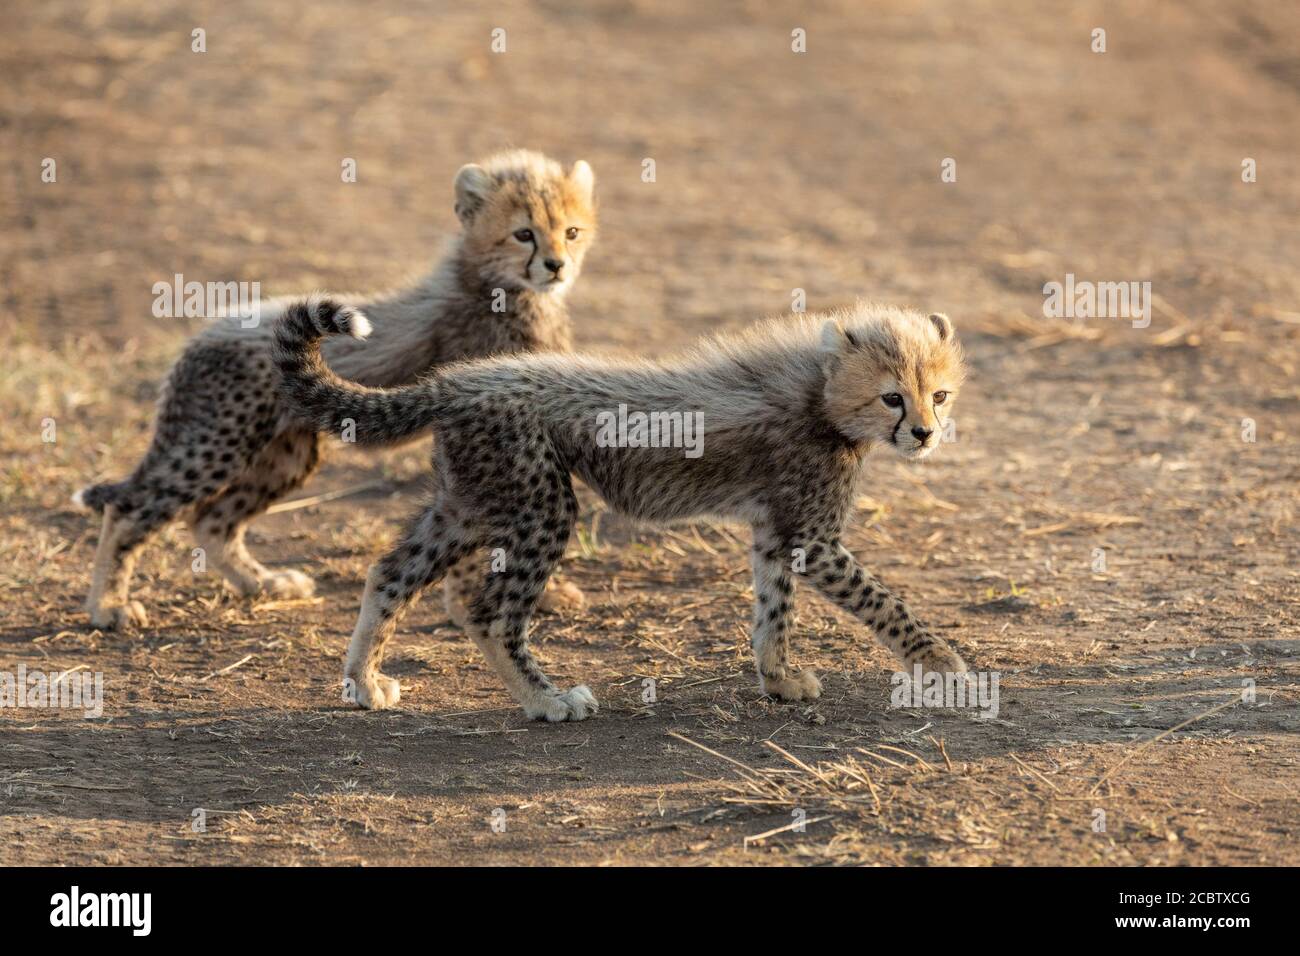 Dos peludos cachorros de guepardo mirando alerta caminando a través de arena seca Carretera en el Parque Nacional Serengeti Tanzania Foto de stock